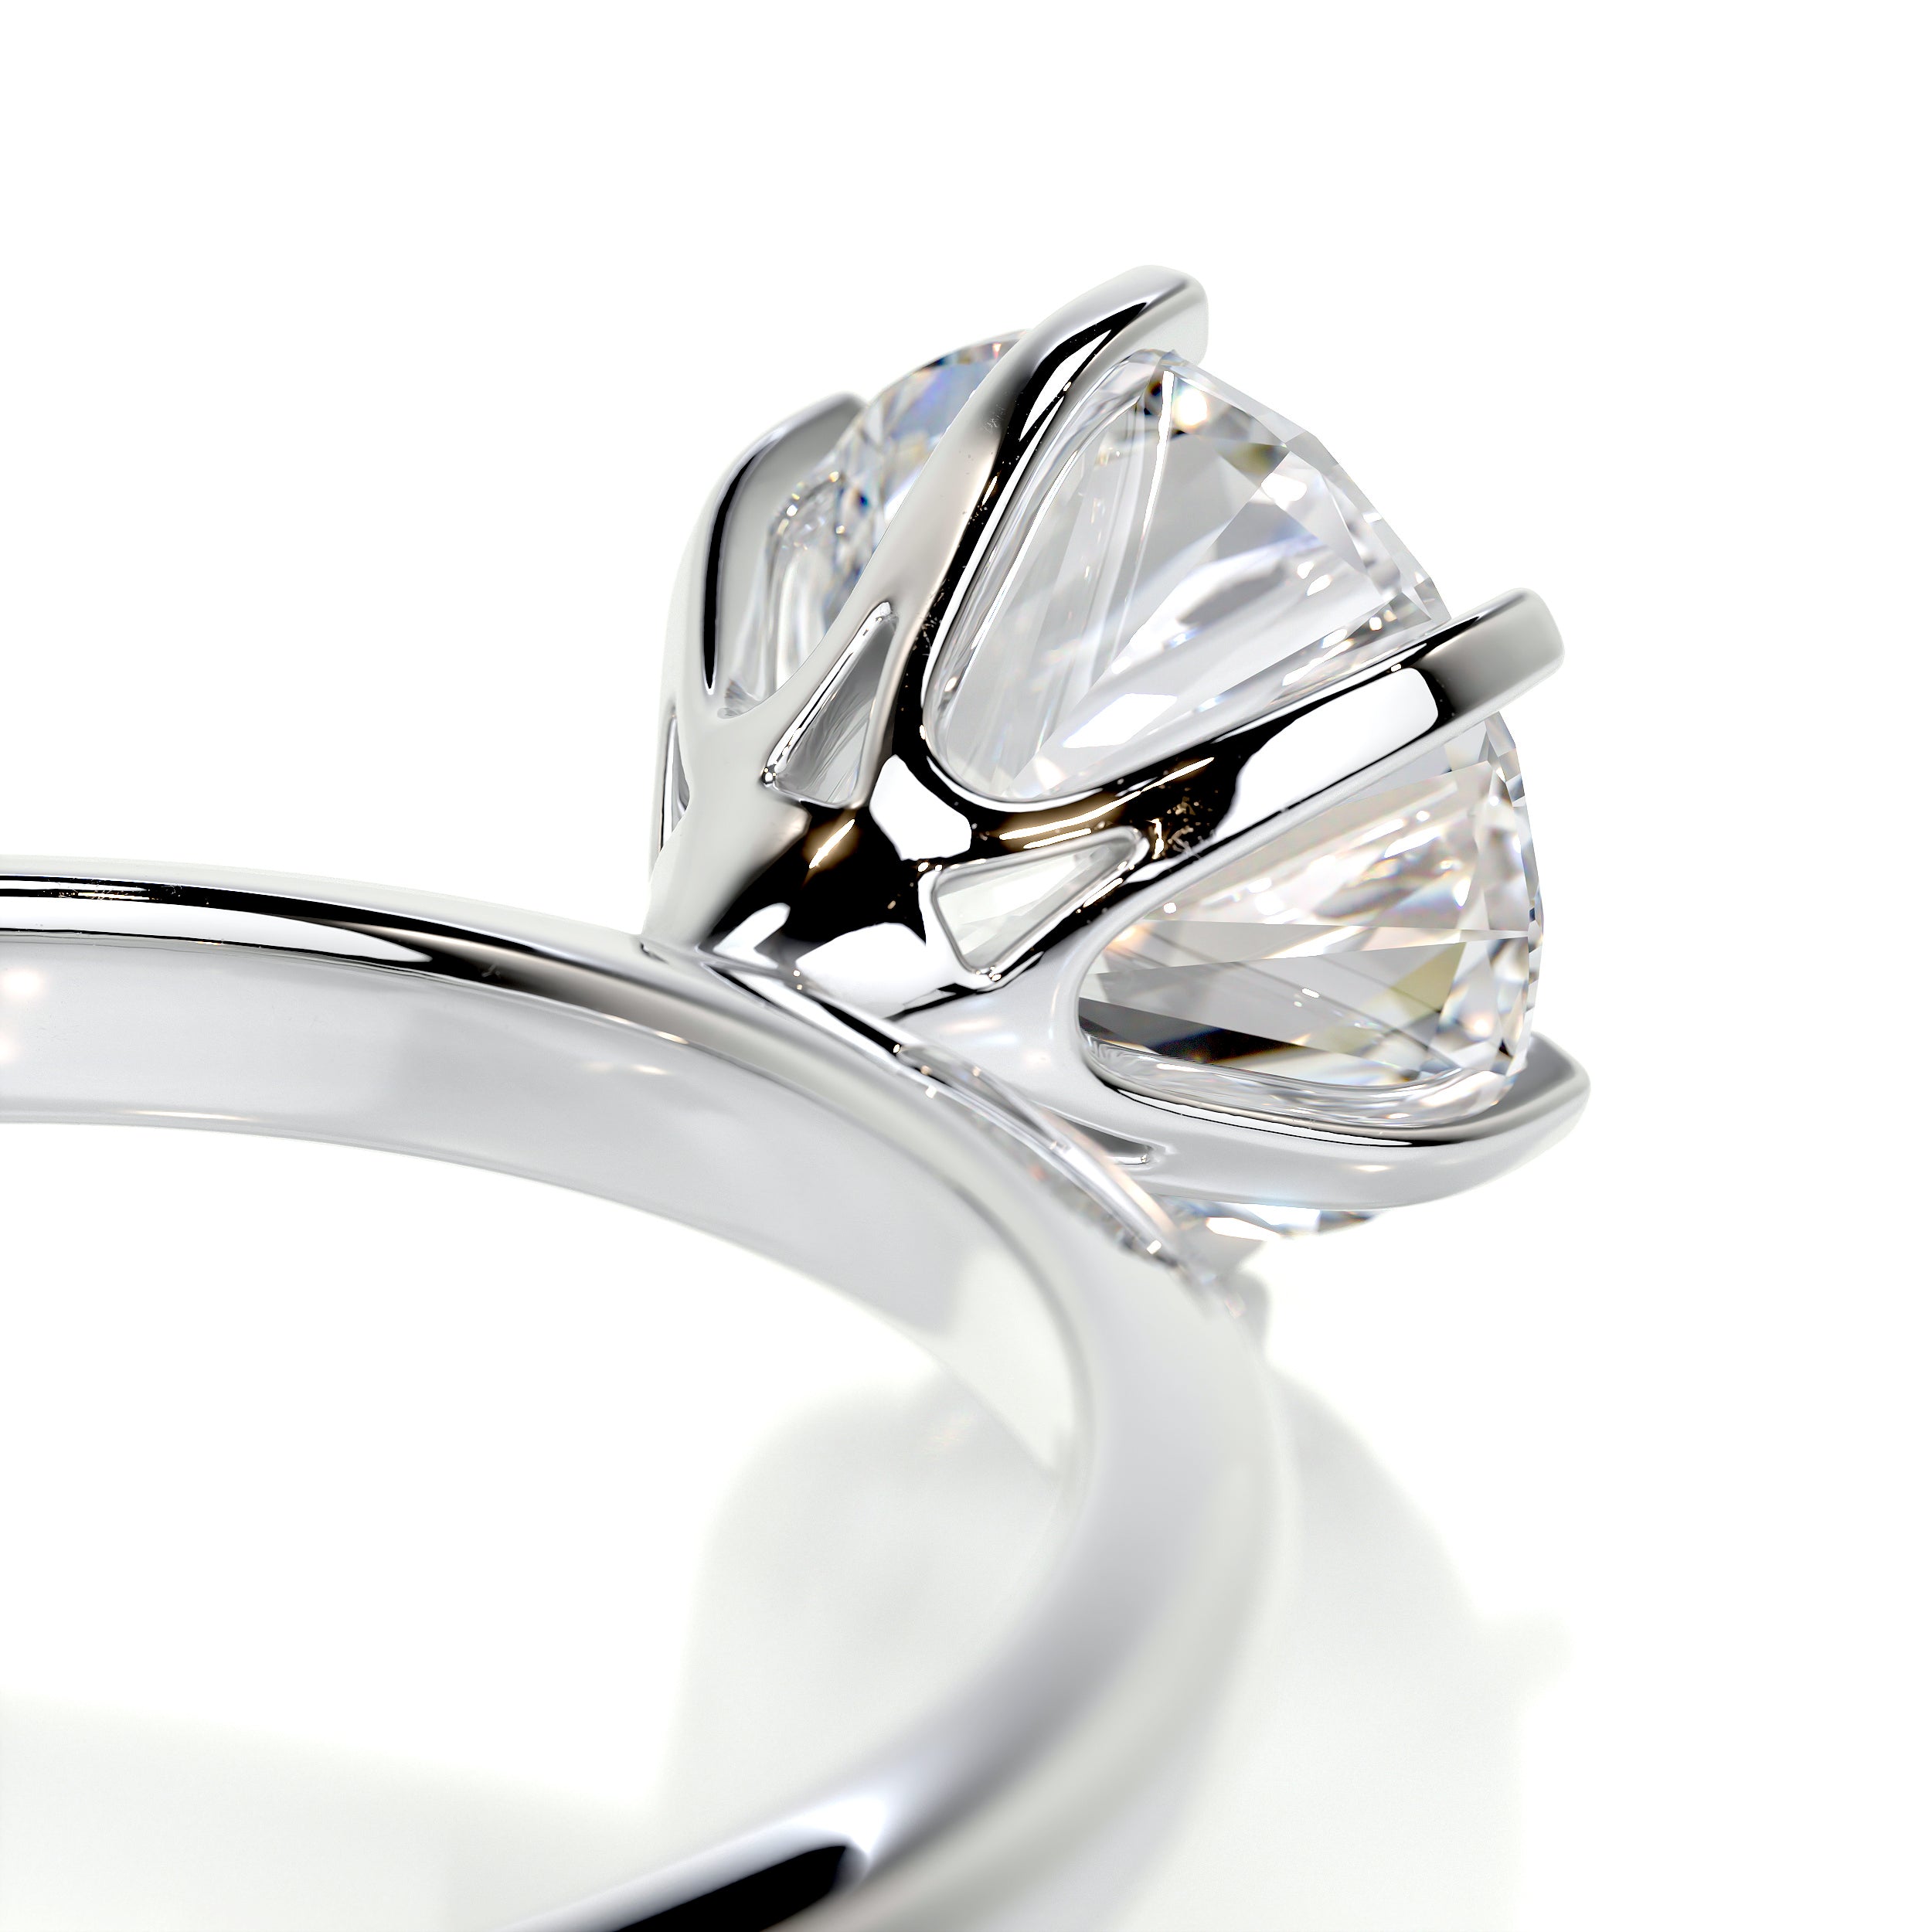 Samantha Diamond Engagement Ring   (1 Carat) -18K White Gold